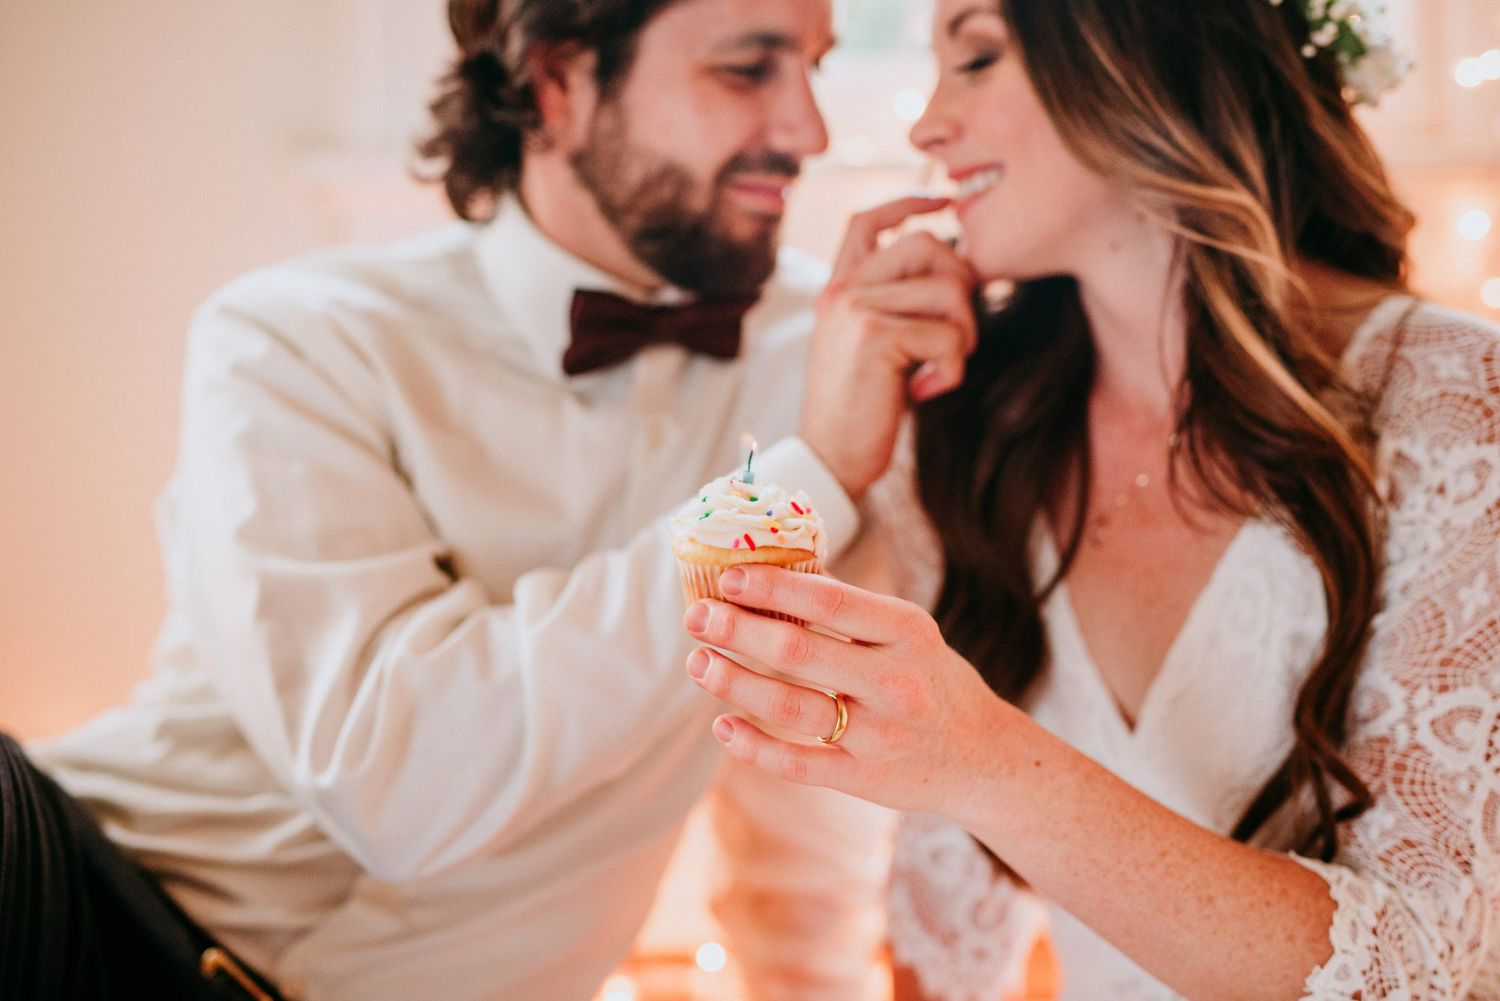 Models Sharing Cupcake at "This Is Us" Wedding Inspiration Shoot